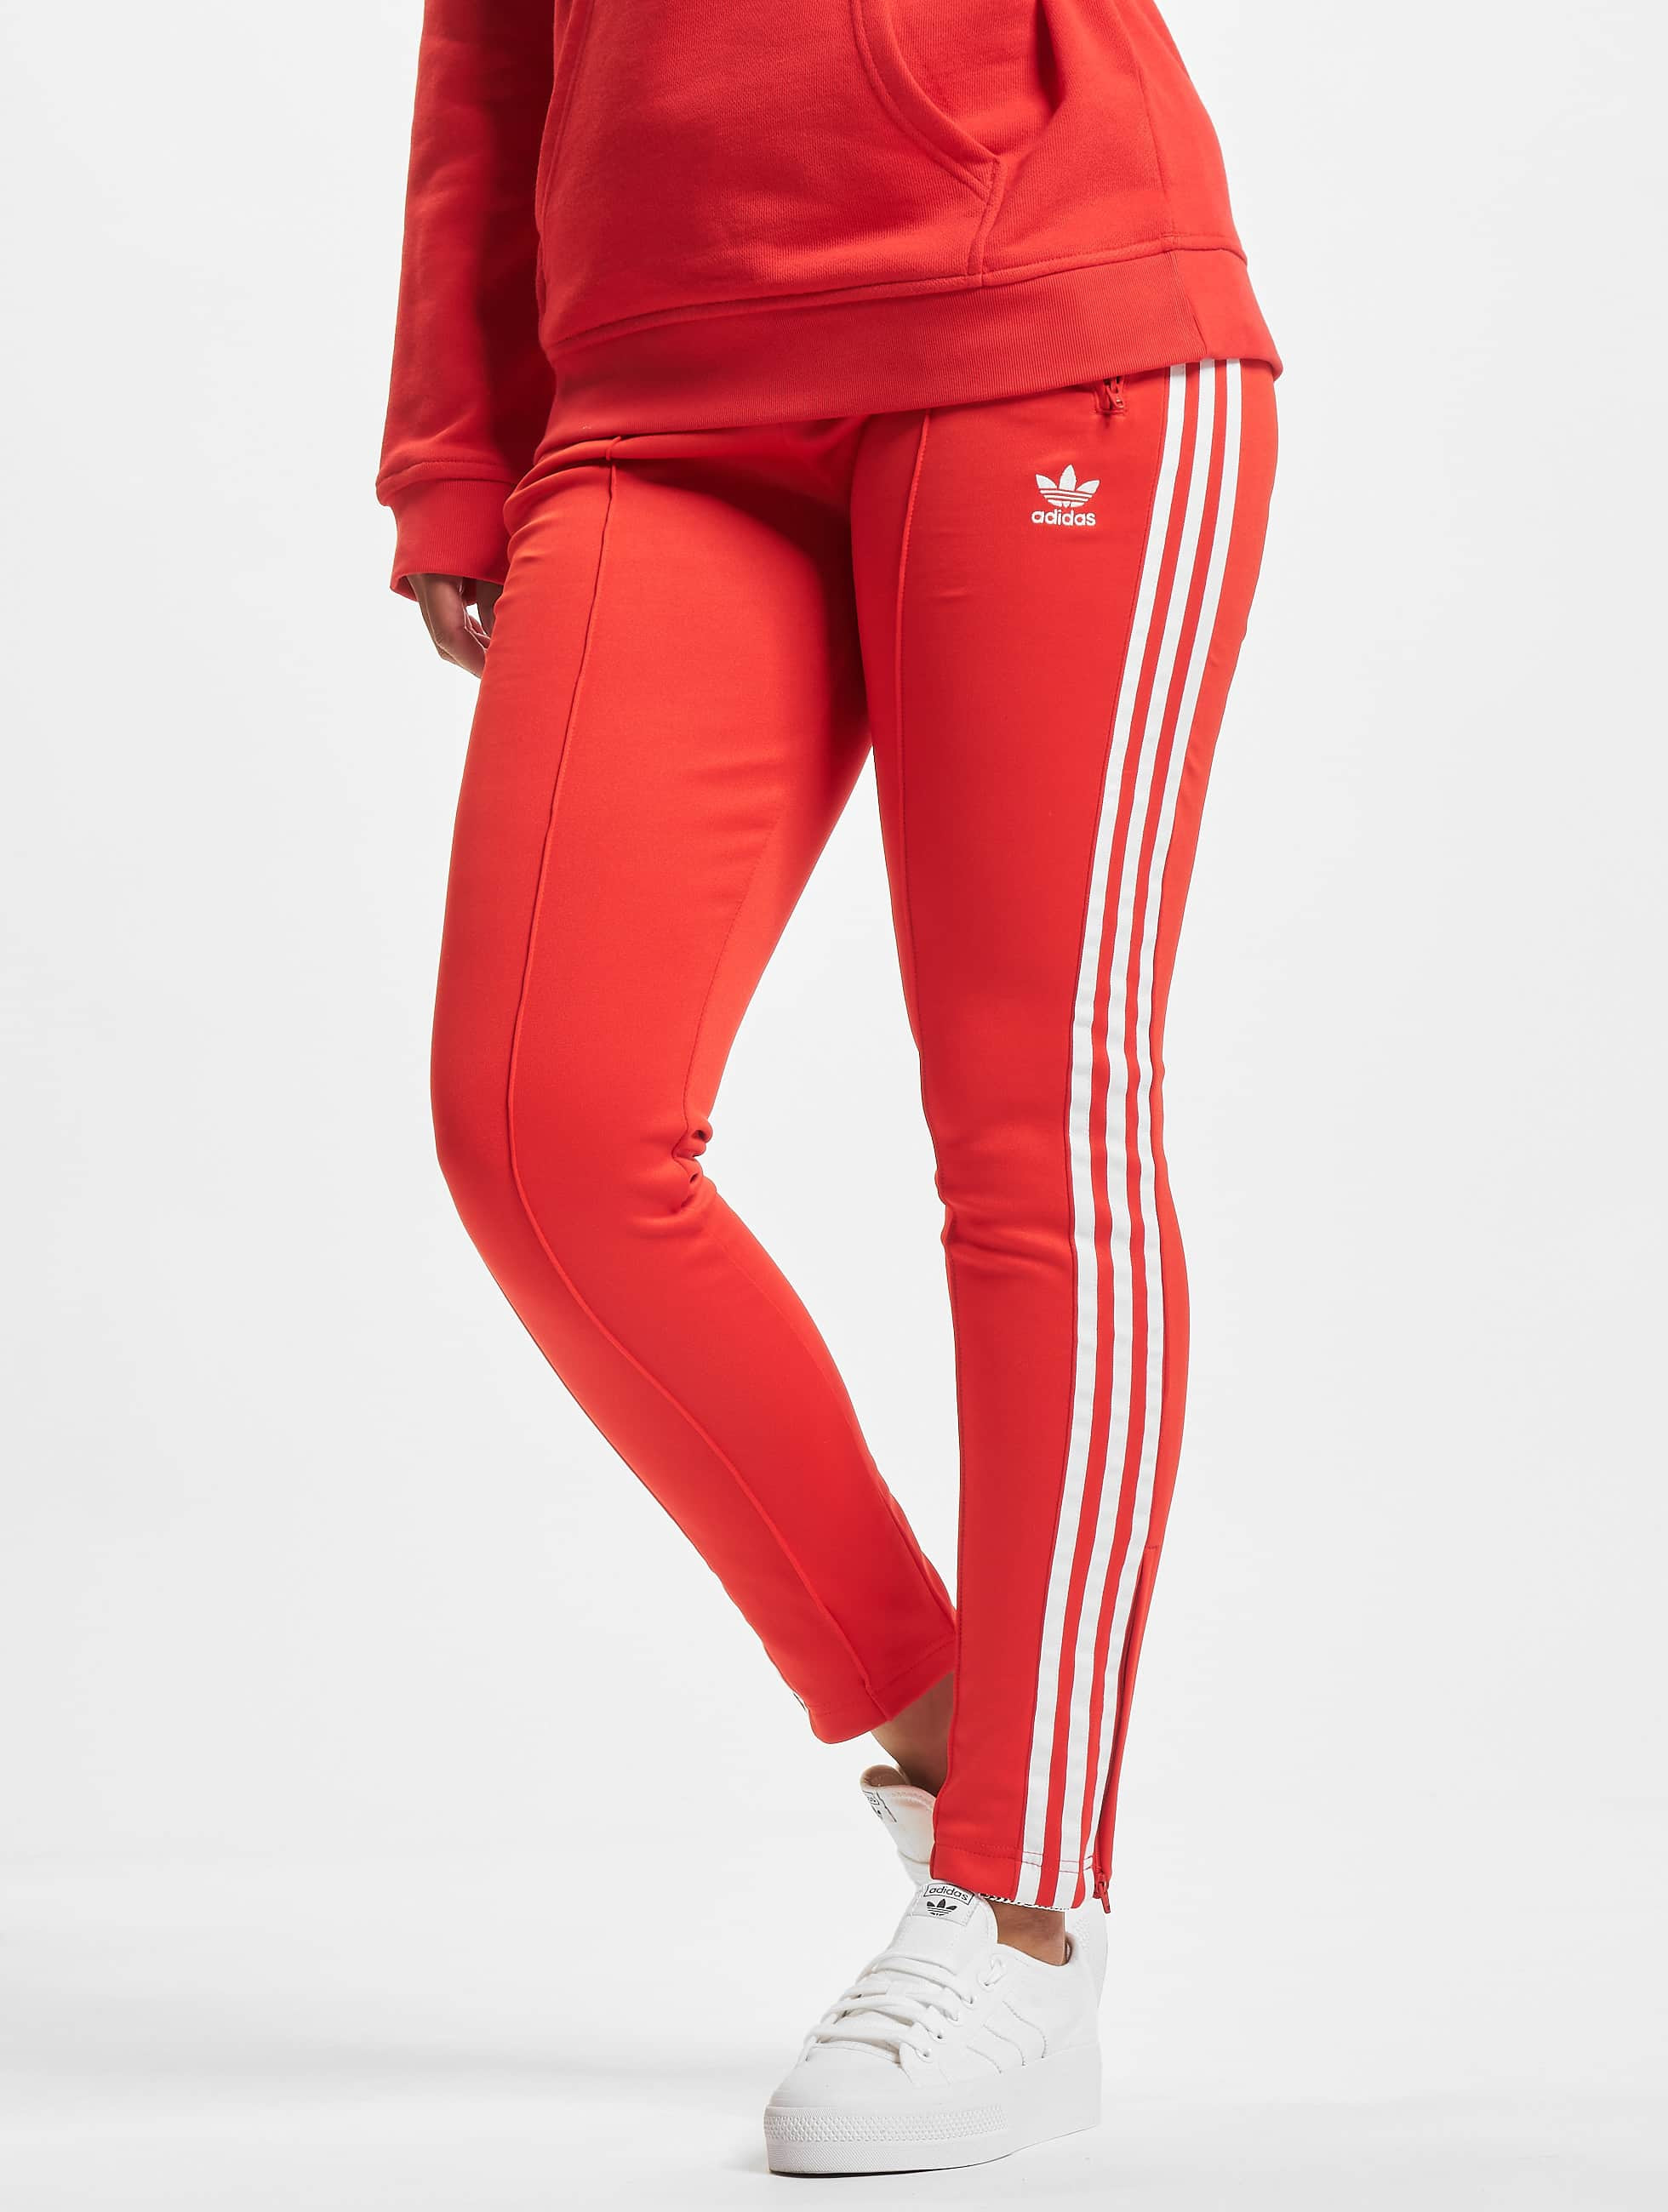 fama Nido Belicoso adidas Originals Pantalón / Pantalón deportivo SST en rojo 872936